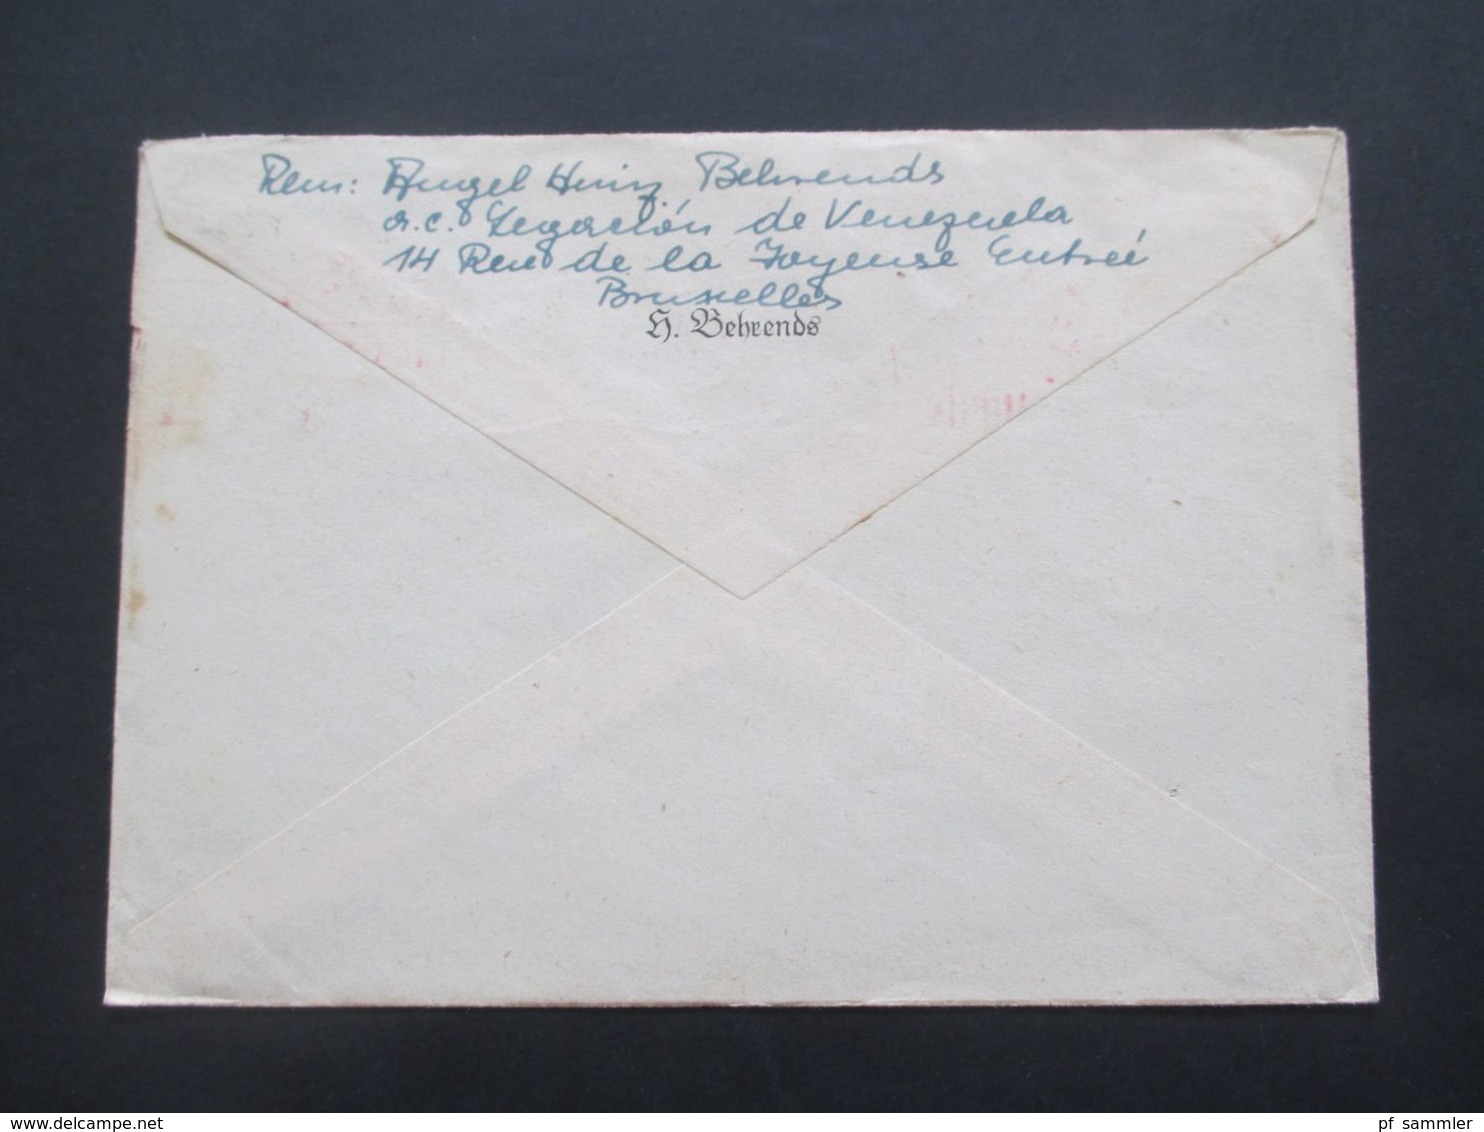 Belgien 1947 Belege Mit Zensurstempel US Civil Censorship Munich Nach Berchtesgaden Im Postamt Amerikanische Zone - Covers & Documents